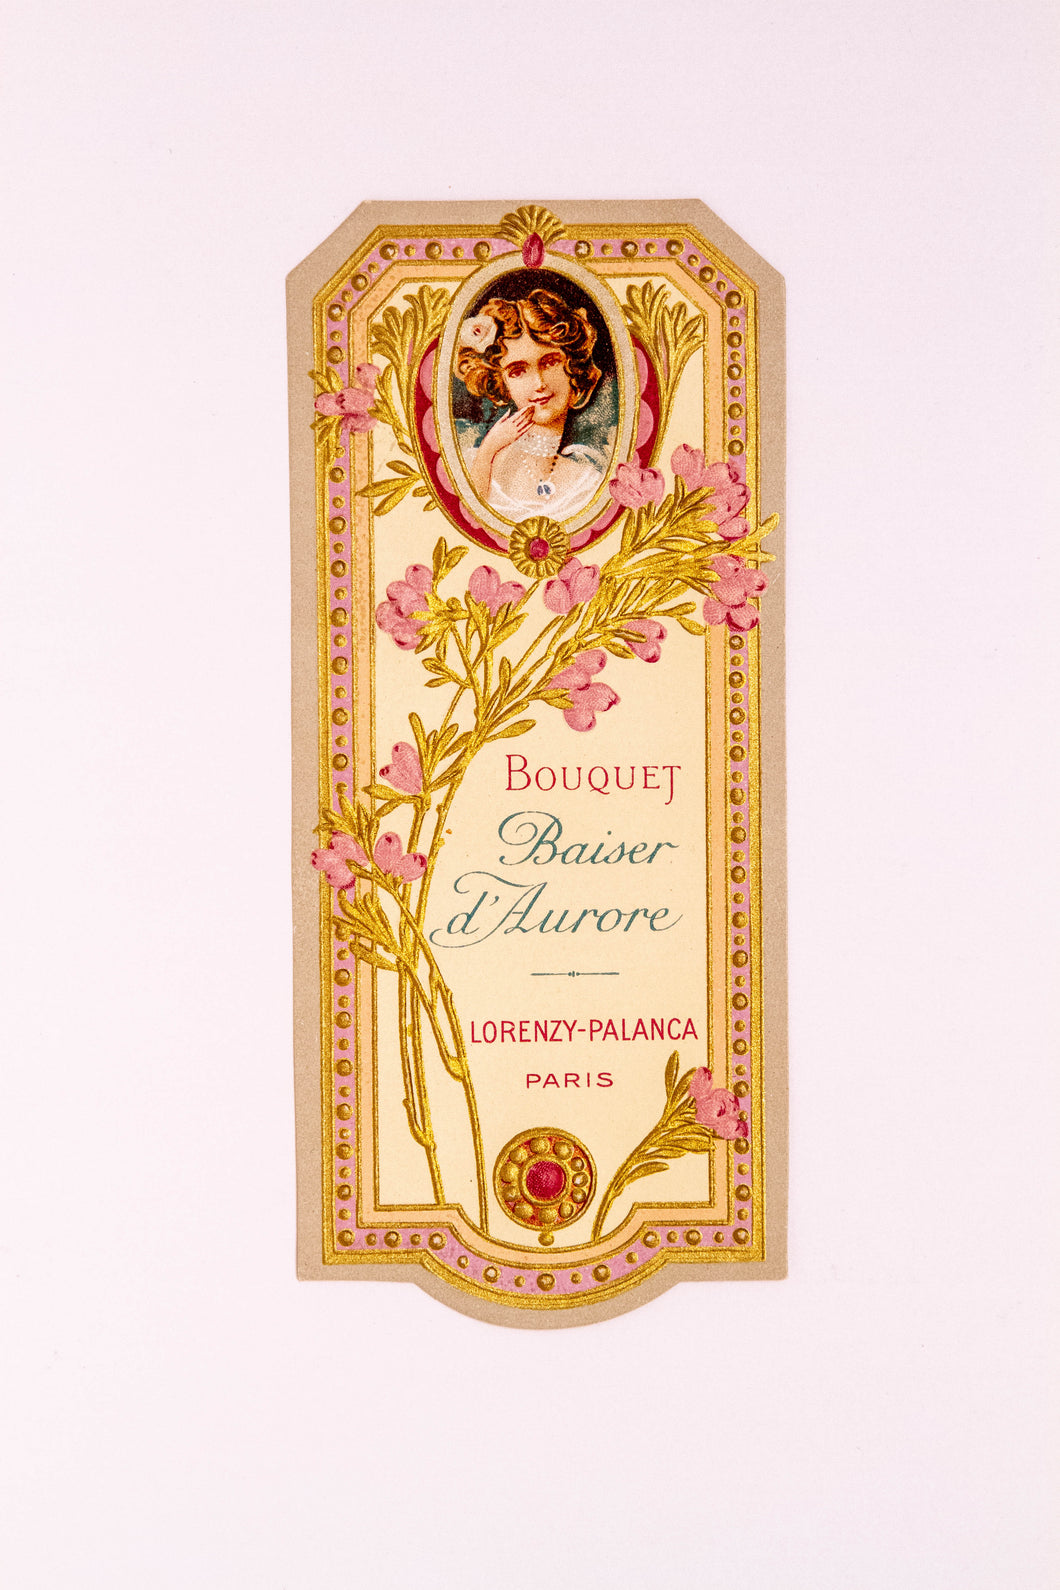 Vintage Bouquet, BAISER D' AURORE, Lorenzy Palanca, Antique Perfume Label, Paris - TheBoxSF